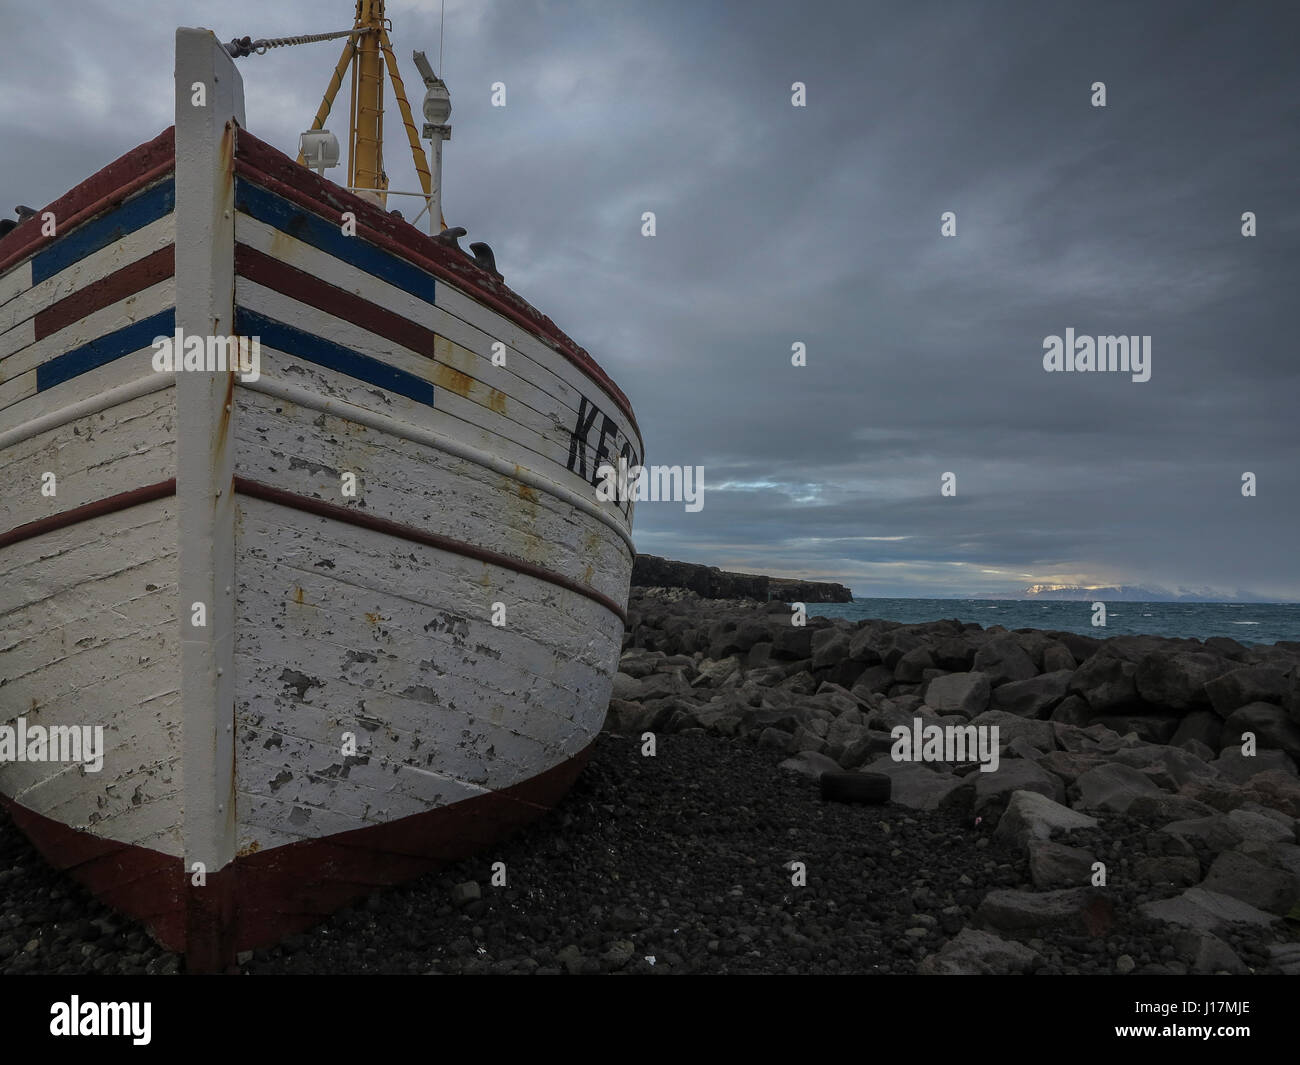 A fishing boat on Keflavik, Iceland Stock Photo